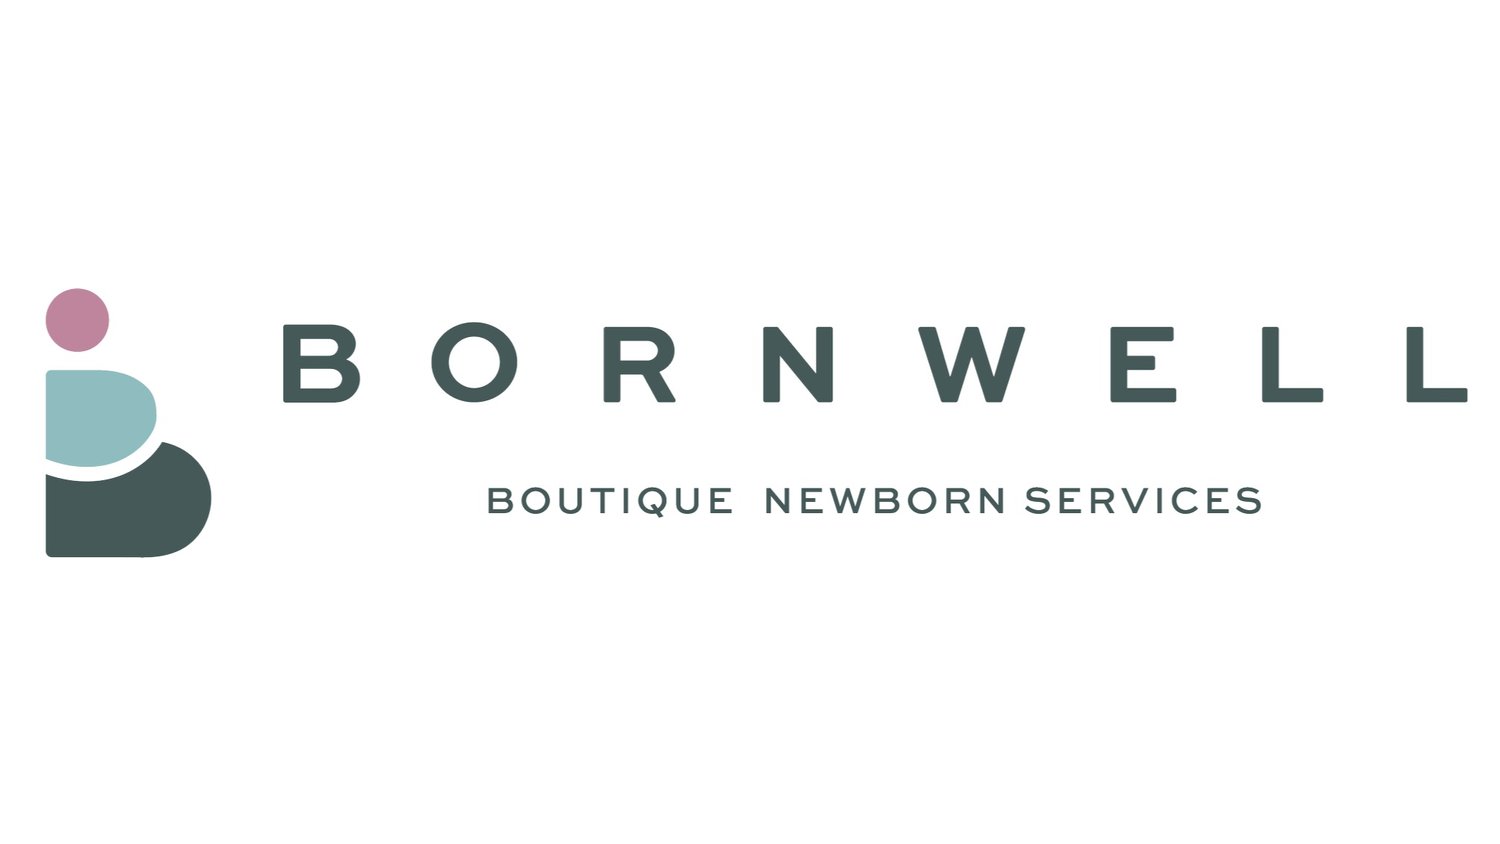 Bornwell Boutique Newborn Services